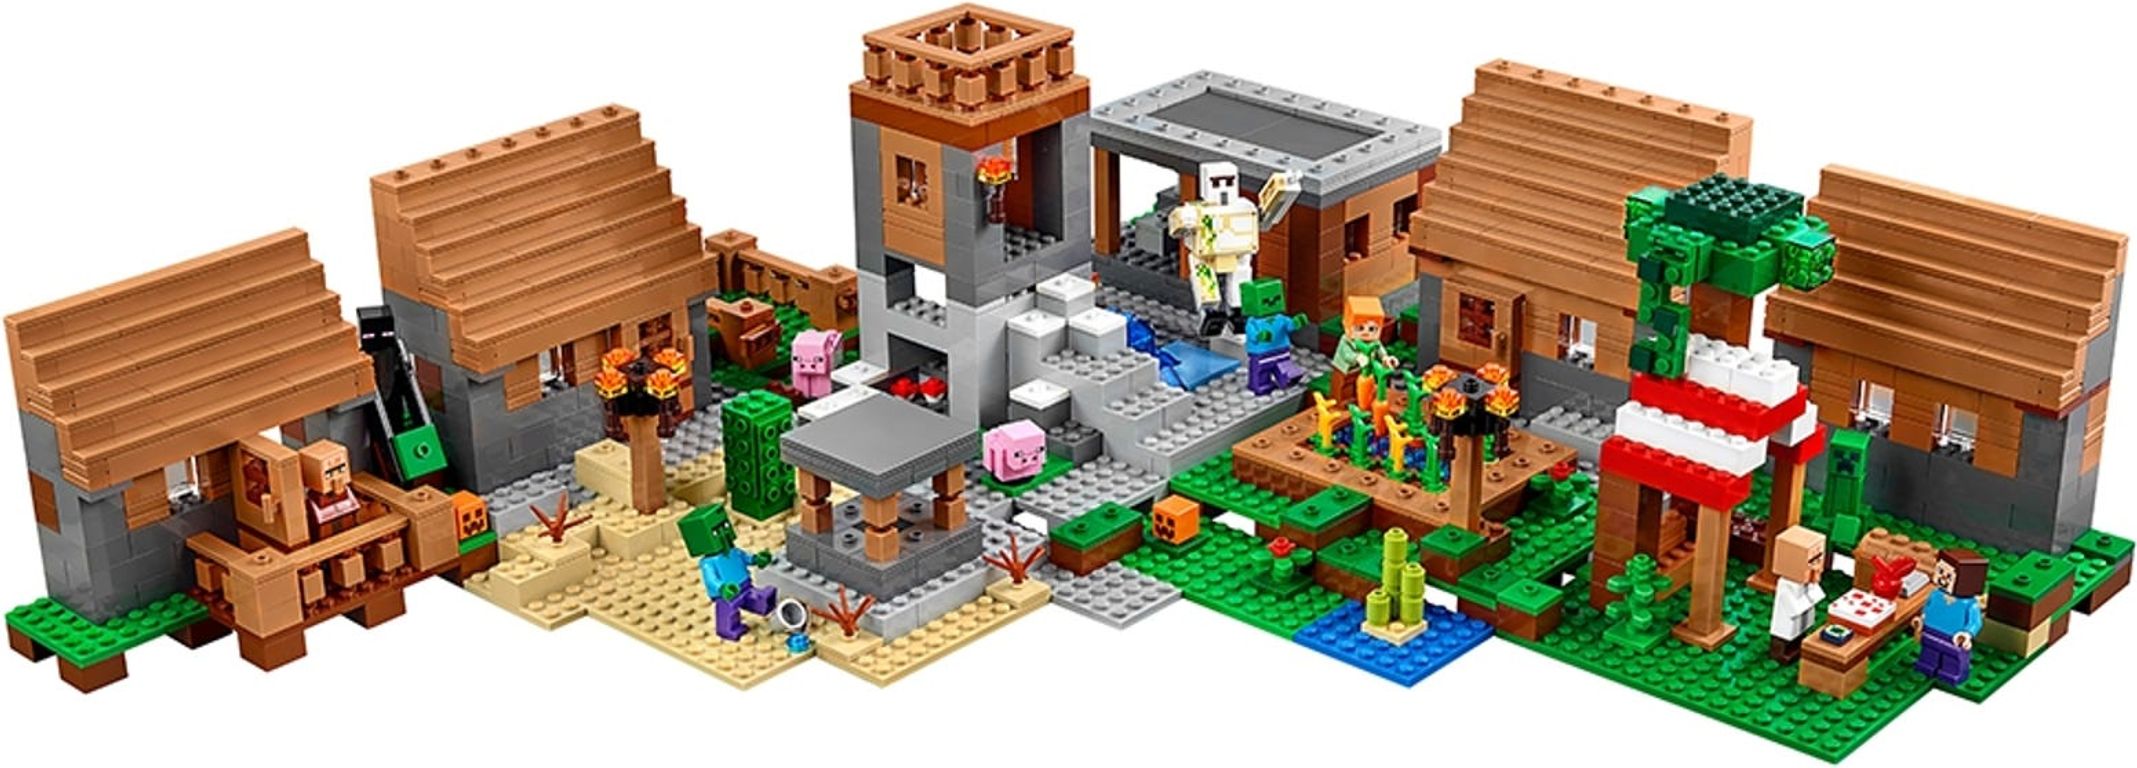 LEGO® Minecraft The Village gameplay